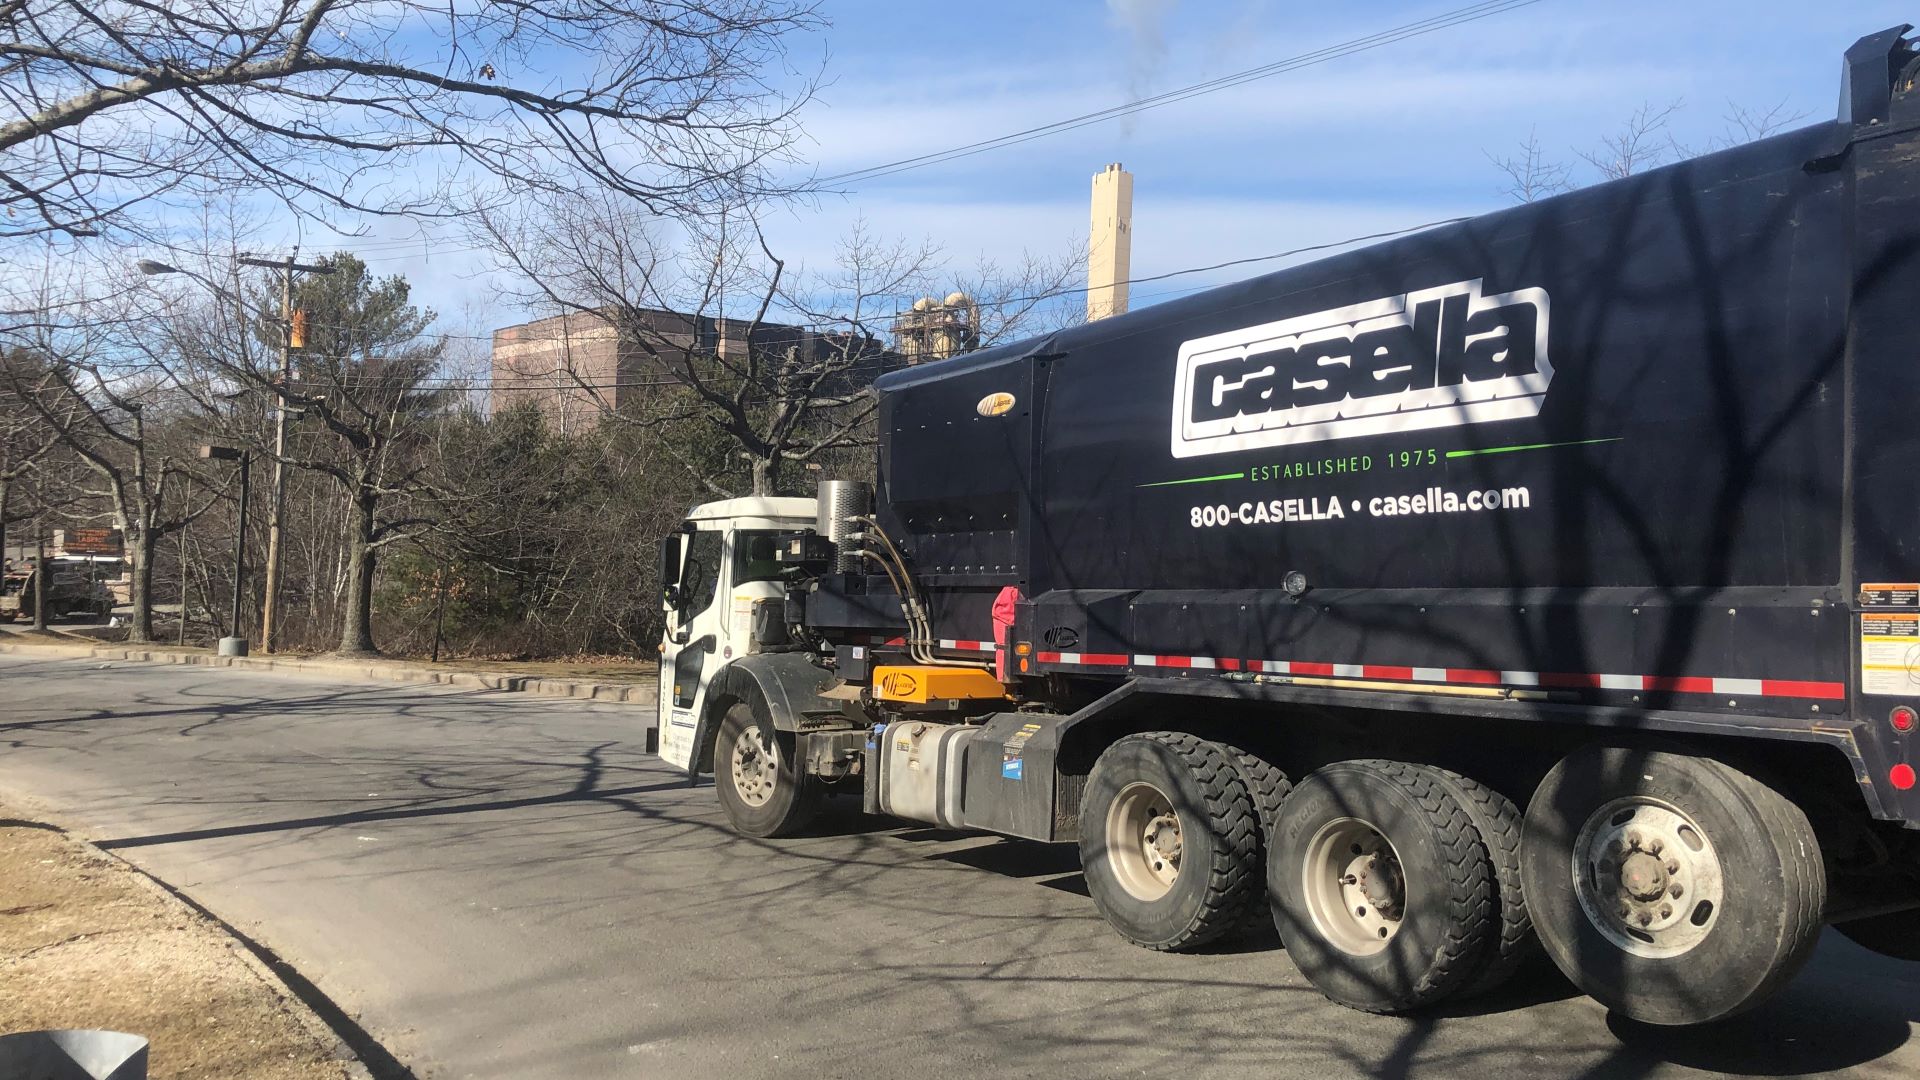 A dark blue Casella garbage truck parked on a street